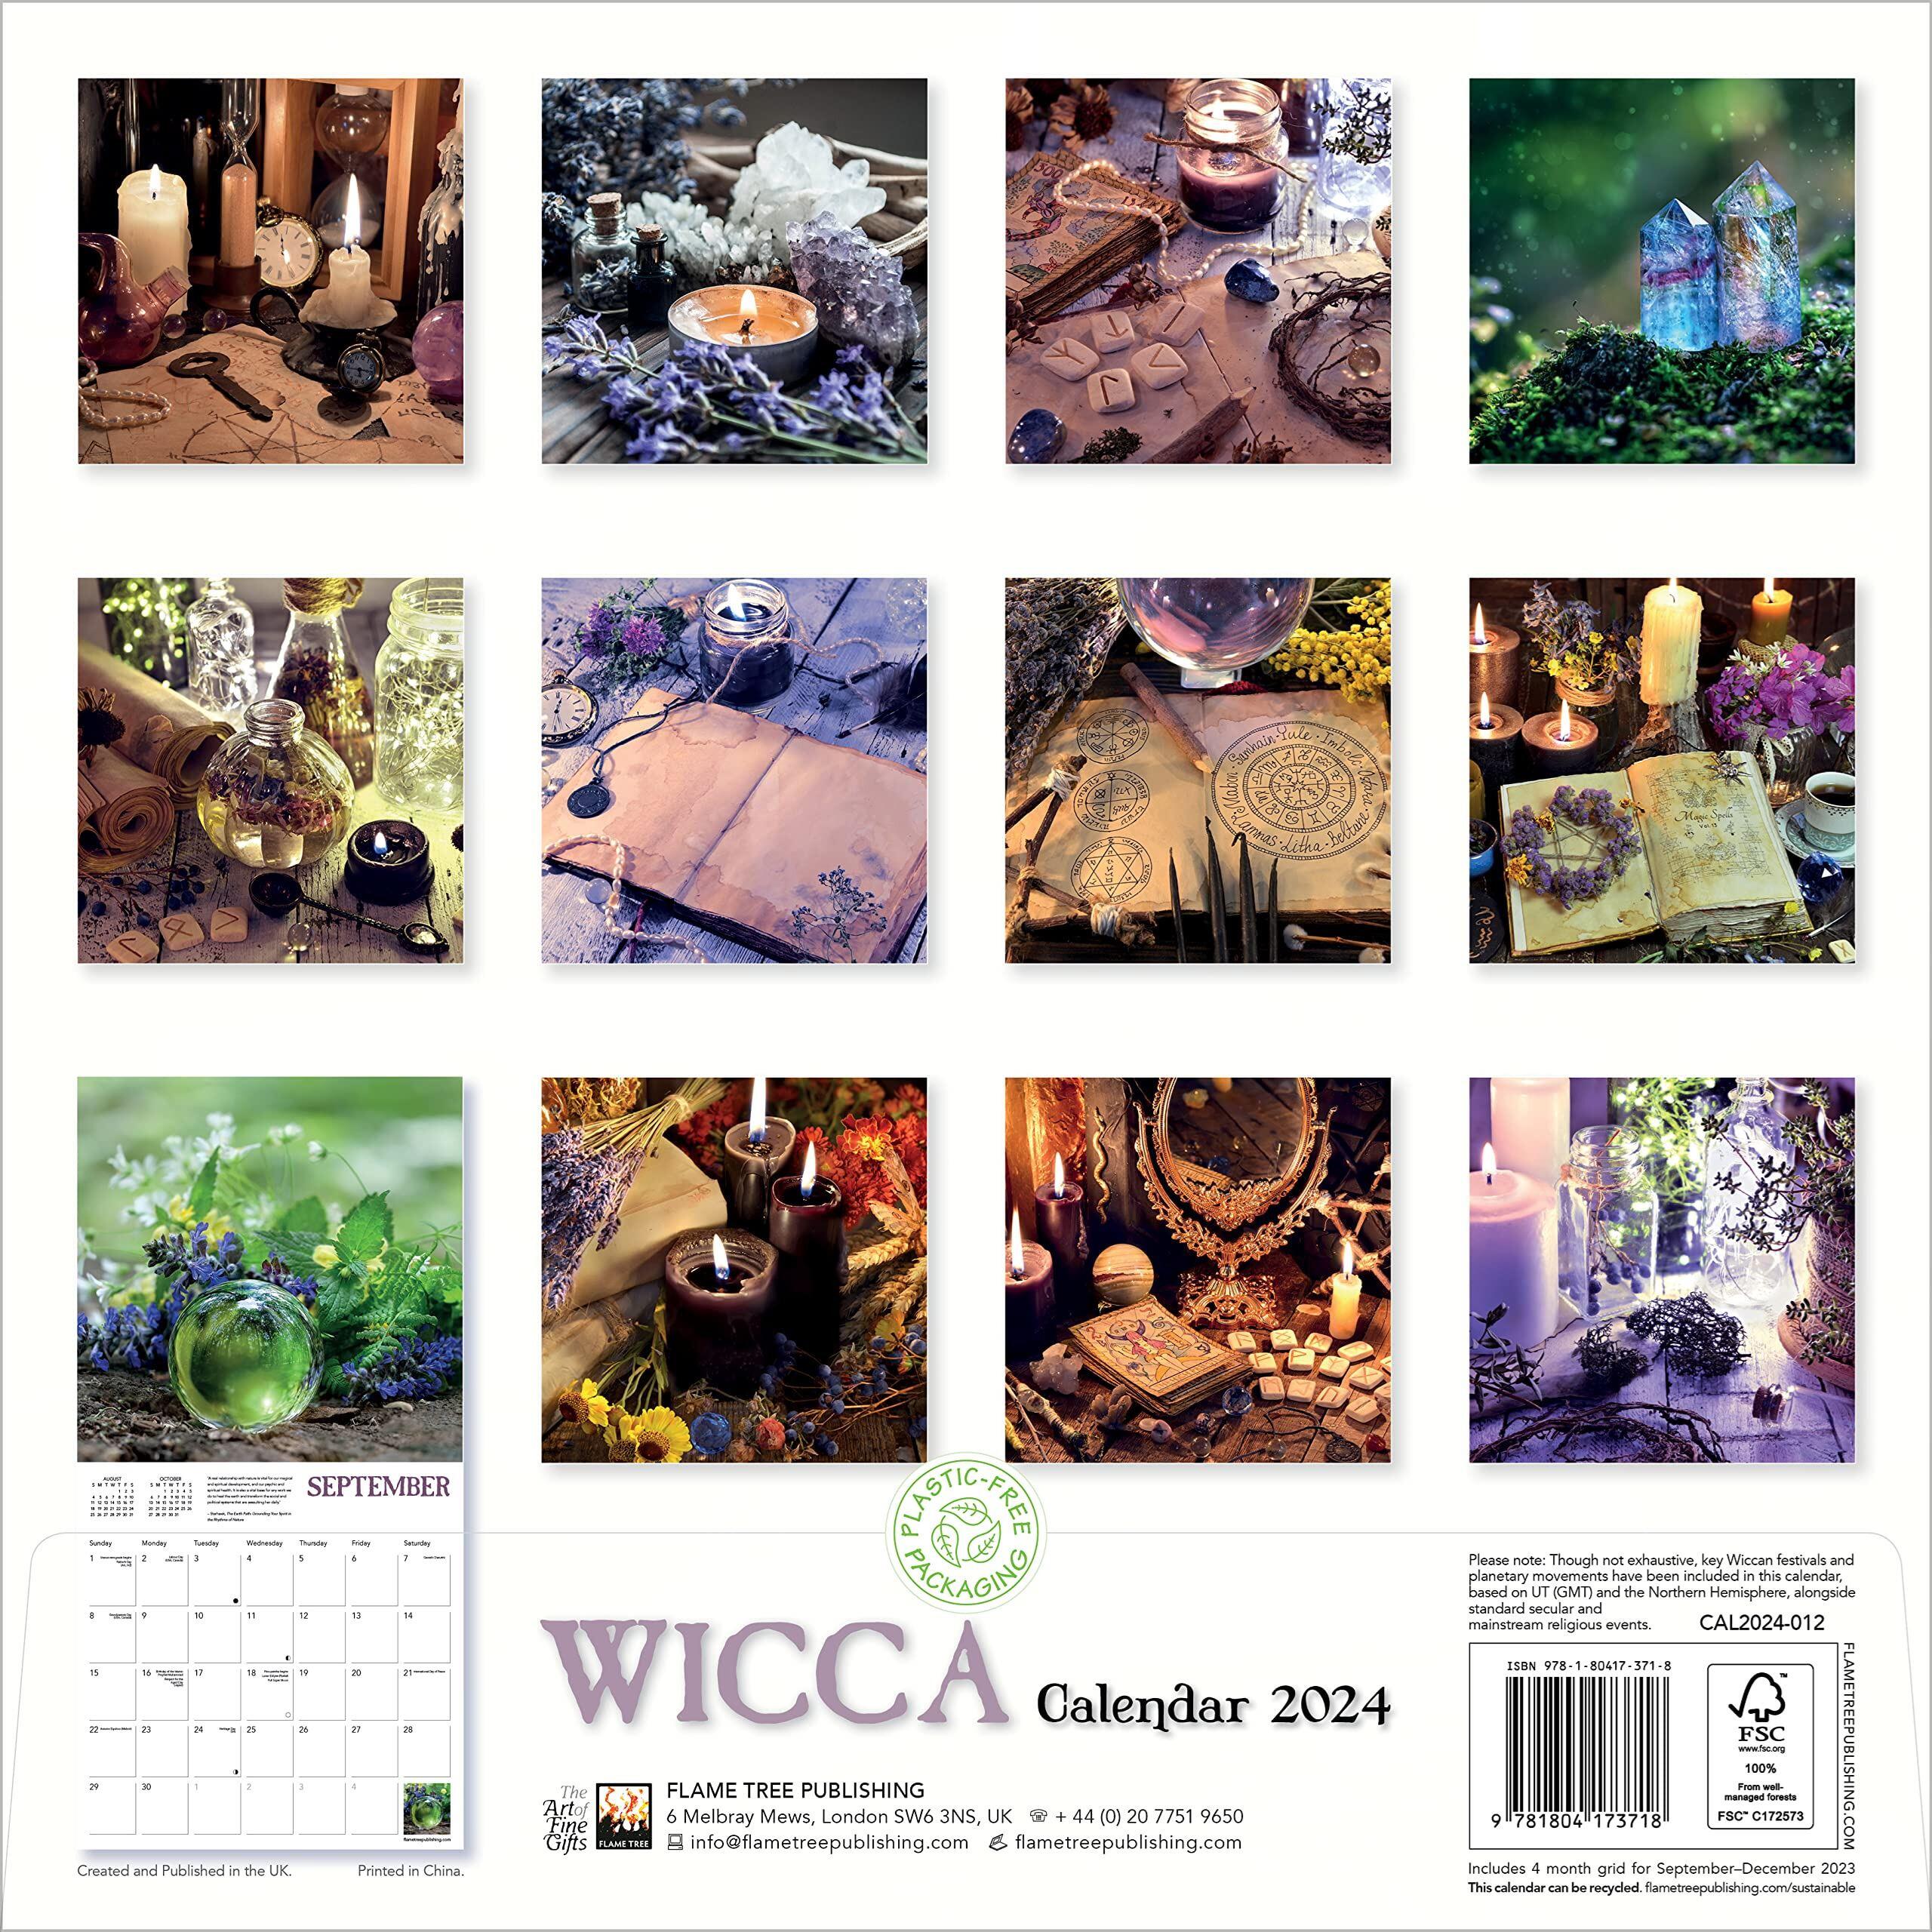 The Wicca Calendar 2024